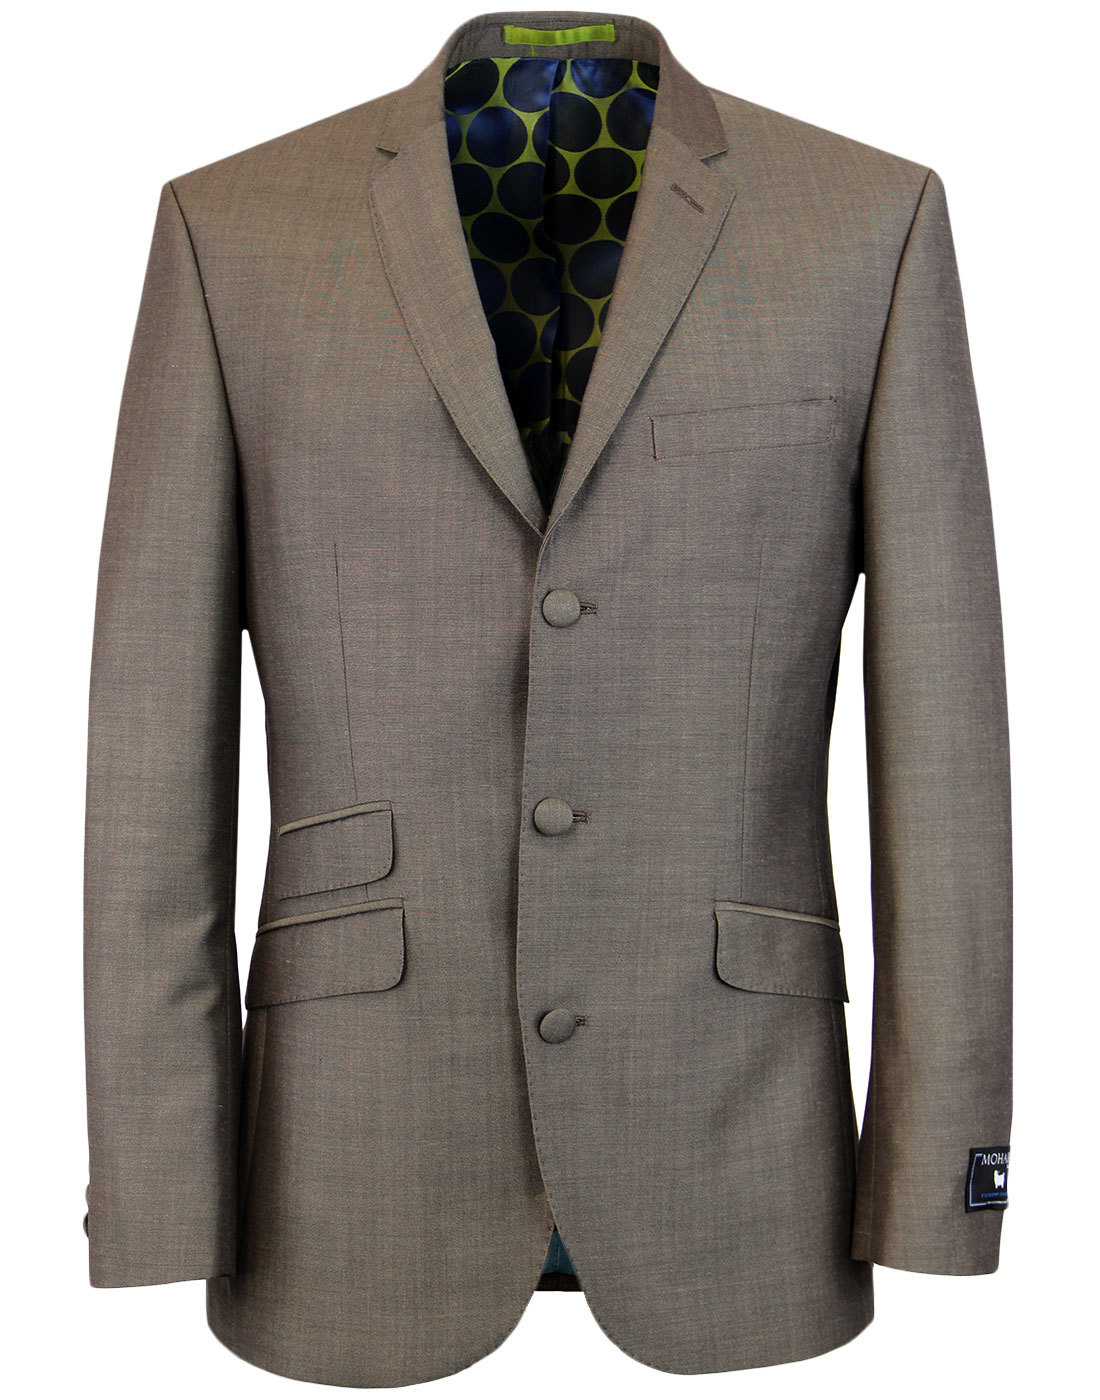 Men's Retro 60s Mod 3 Button Mohair Tonic Suit in Taupe 1960s Mens Suits